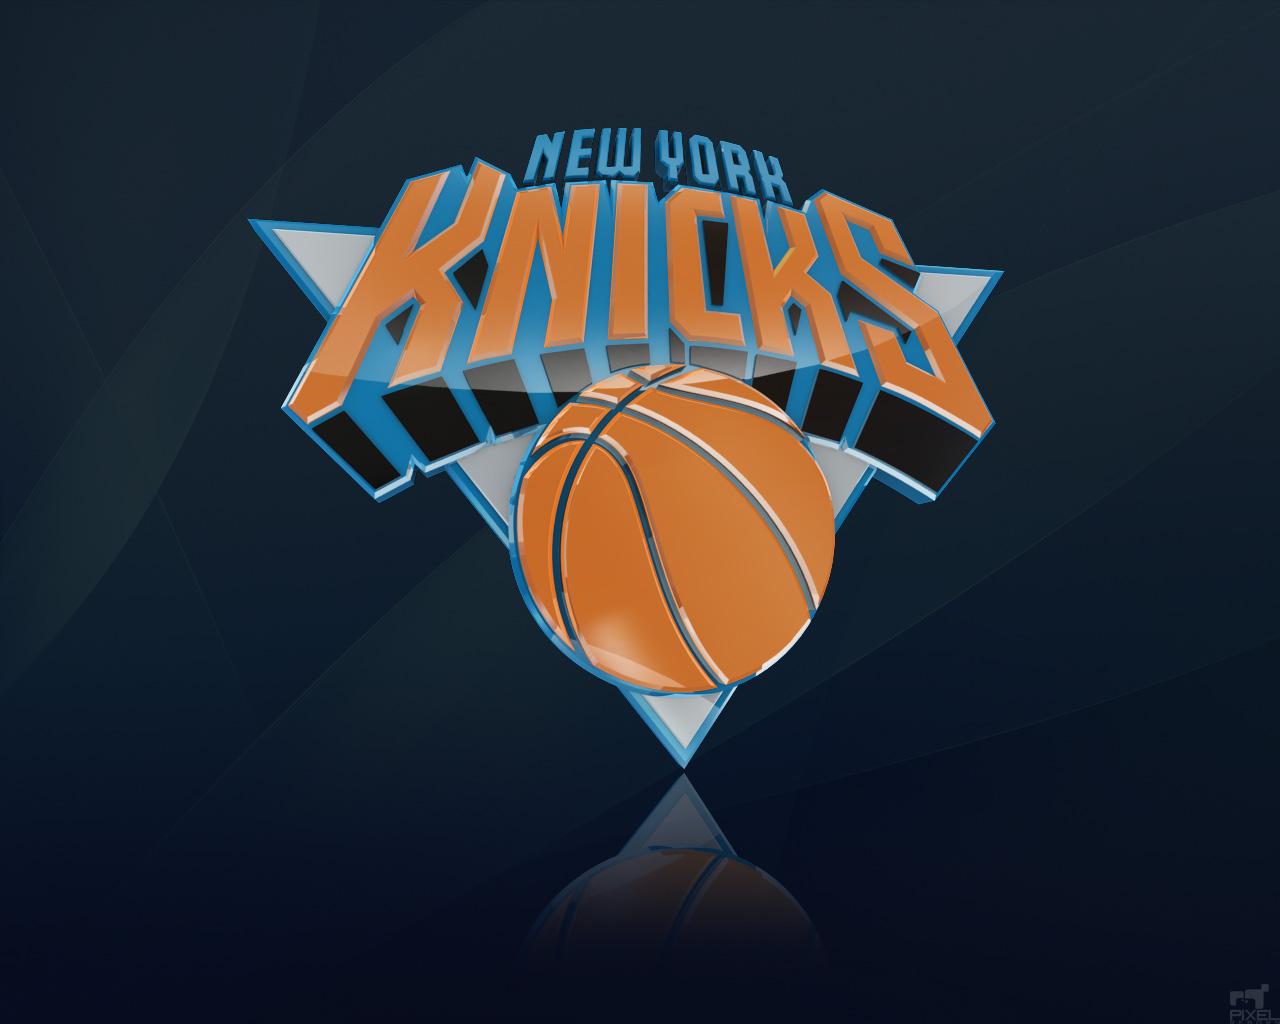 New York Knicks Nba Team Wallpaper | PicsWallpaper.com